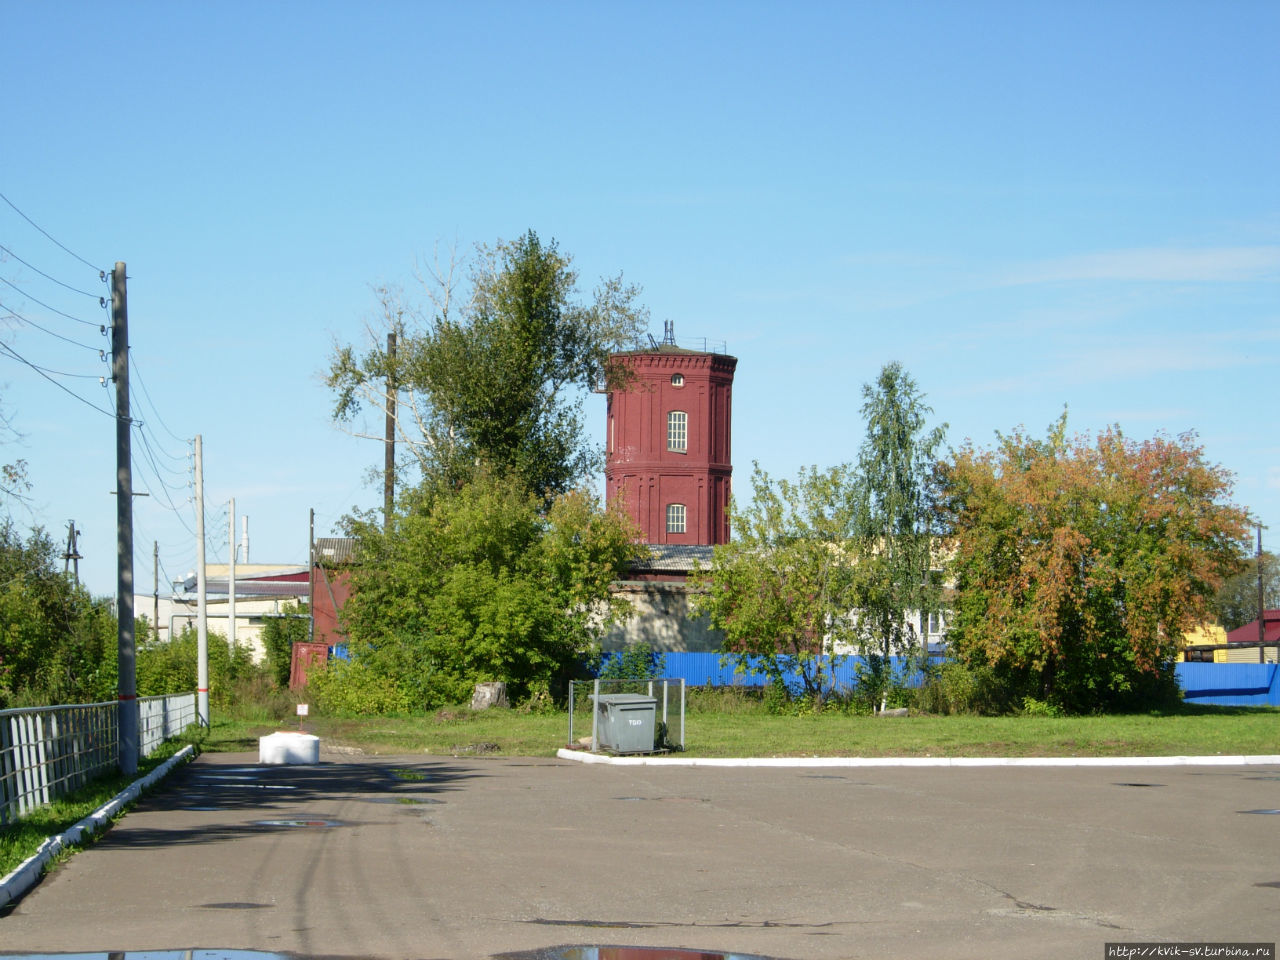 Вдали старая водонапорная башня в современном одеянии, что портит ее вид Зуевка, Россия